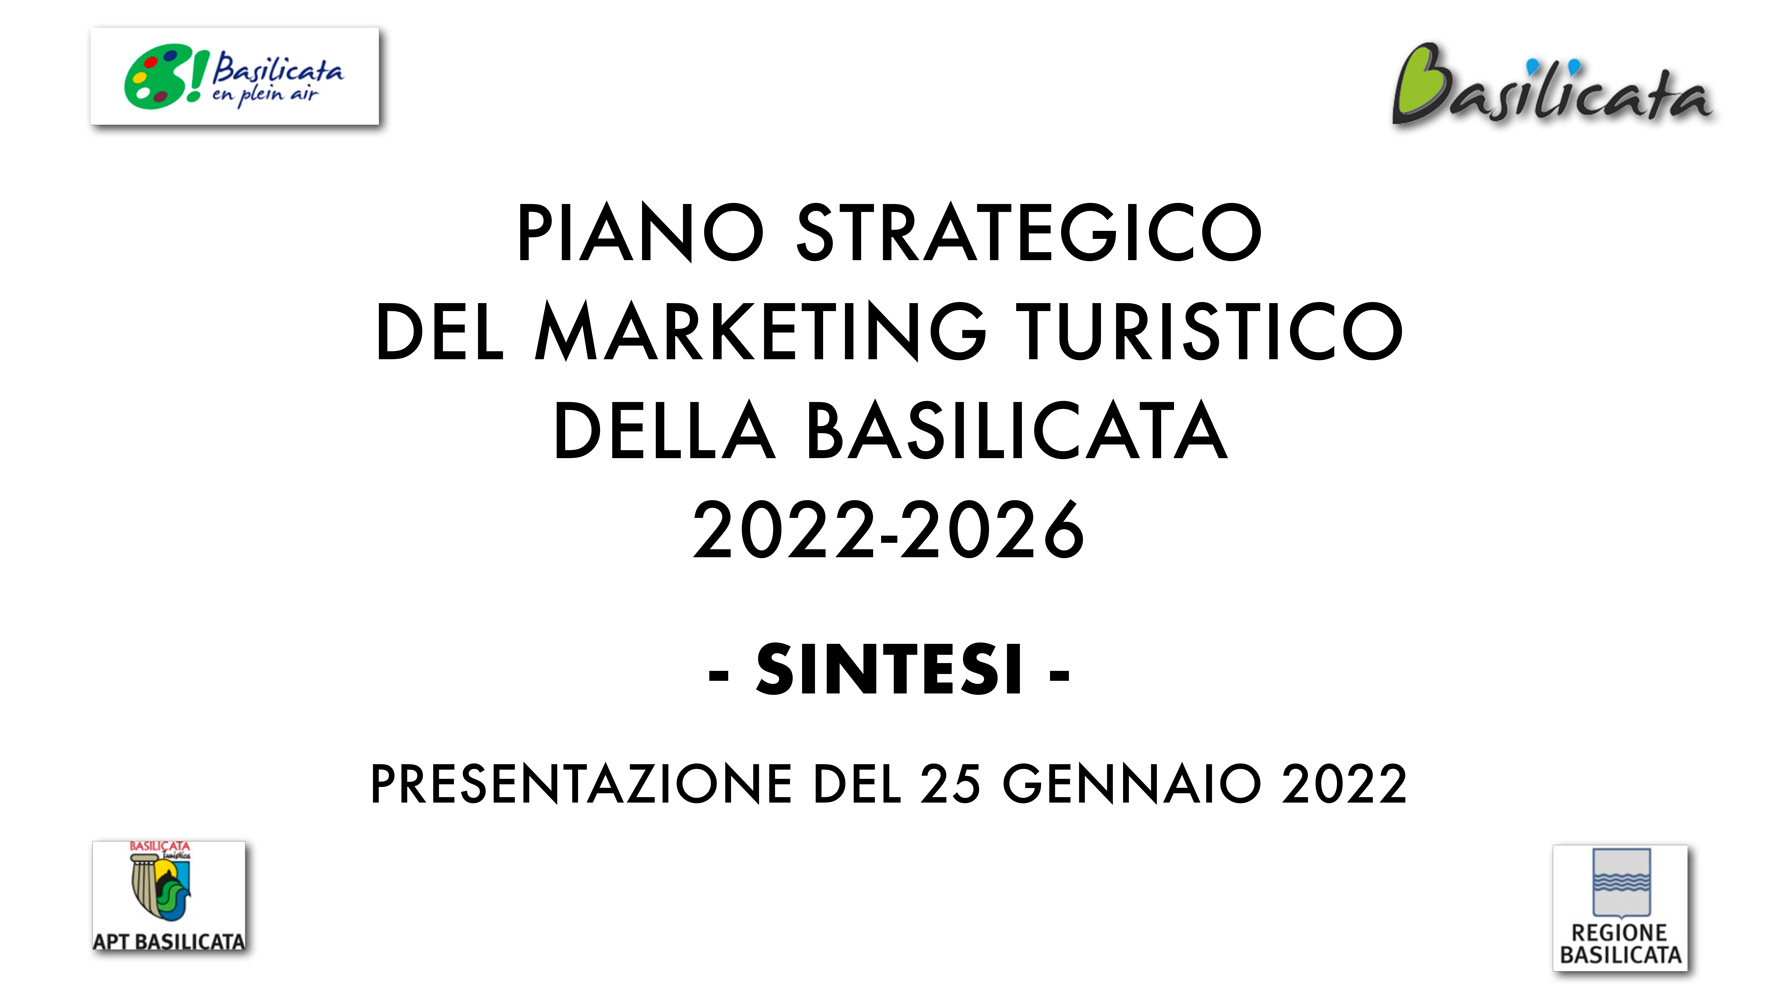 imm_PIANO_STRATEGICO_MARKETING_TURISTICO